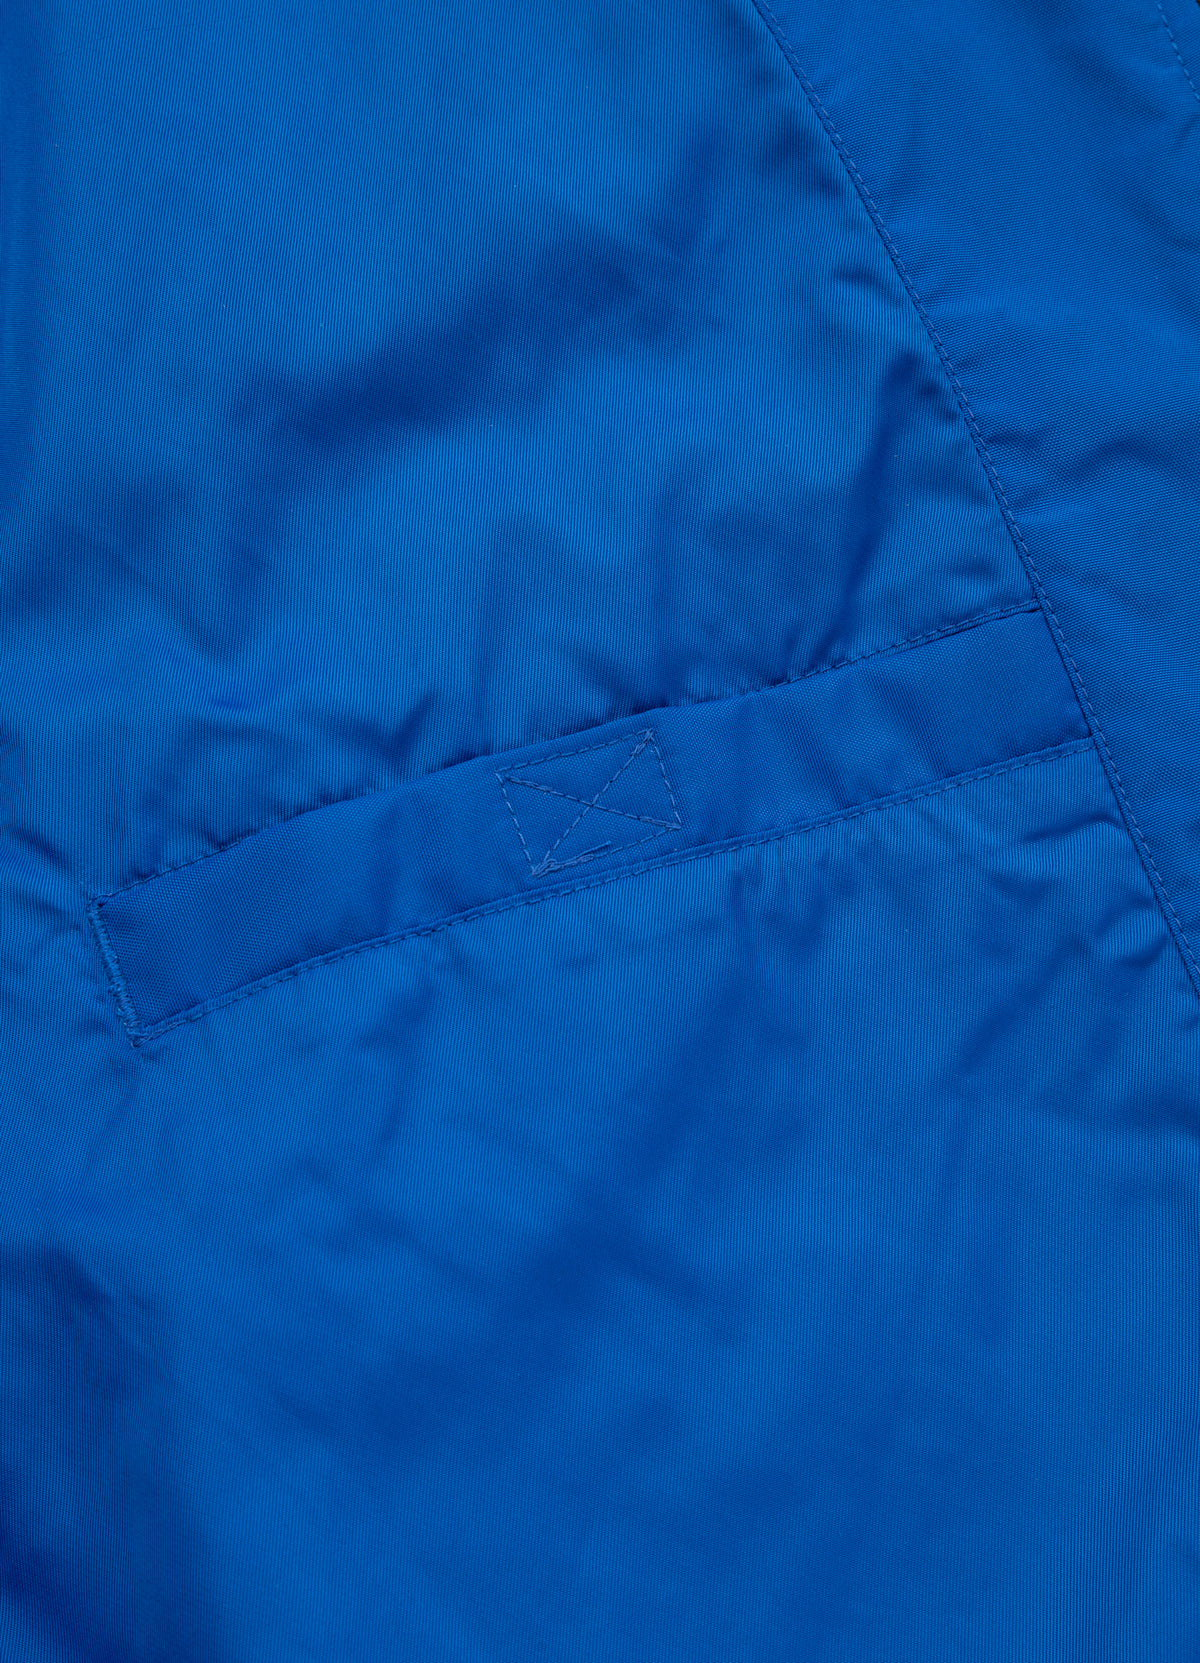 NIMITZ Royal Blue Jacket.